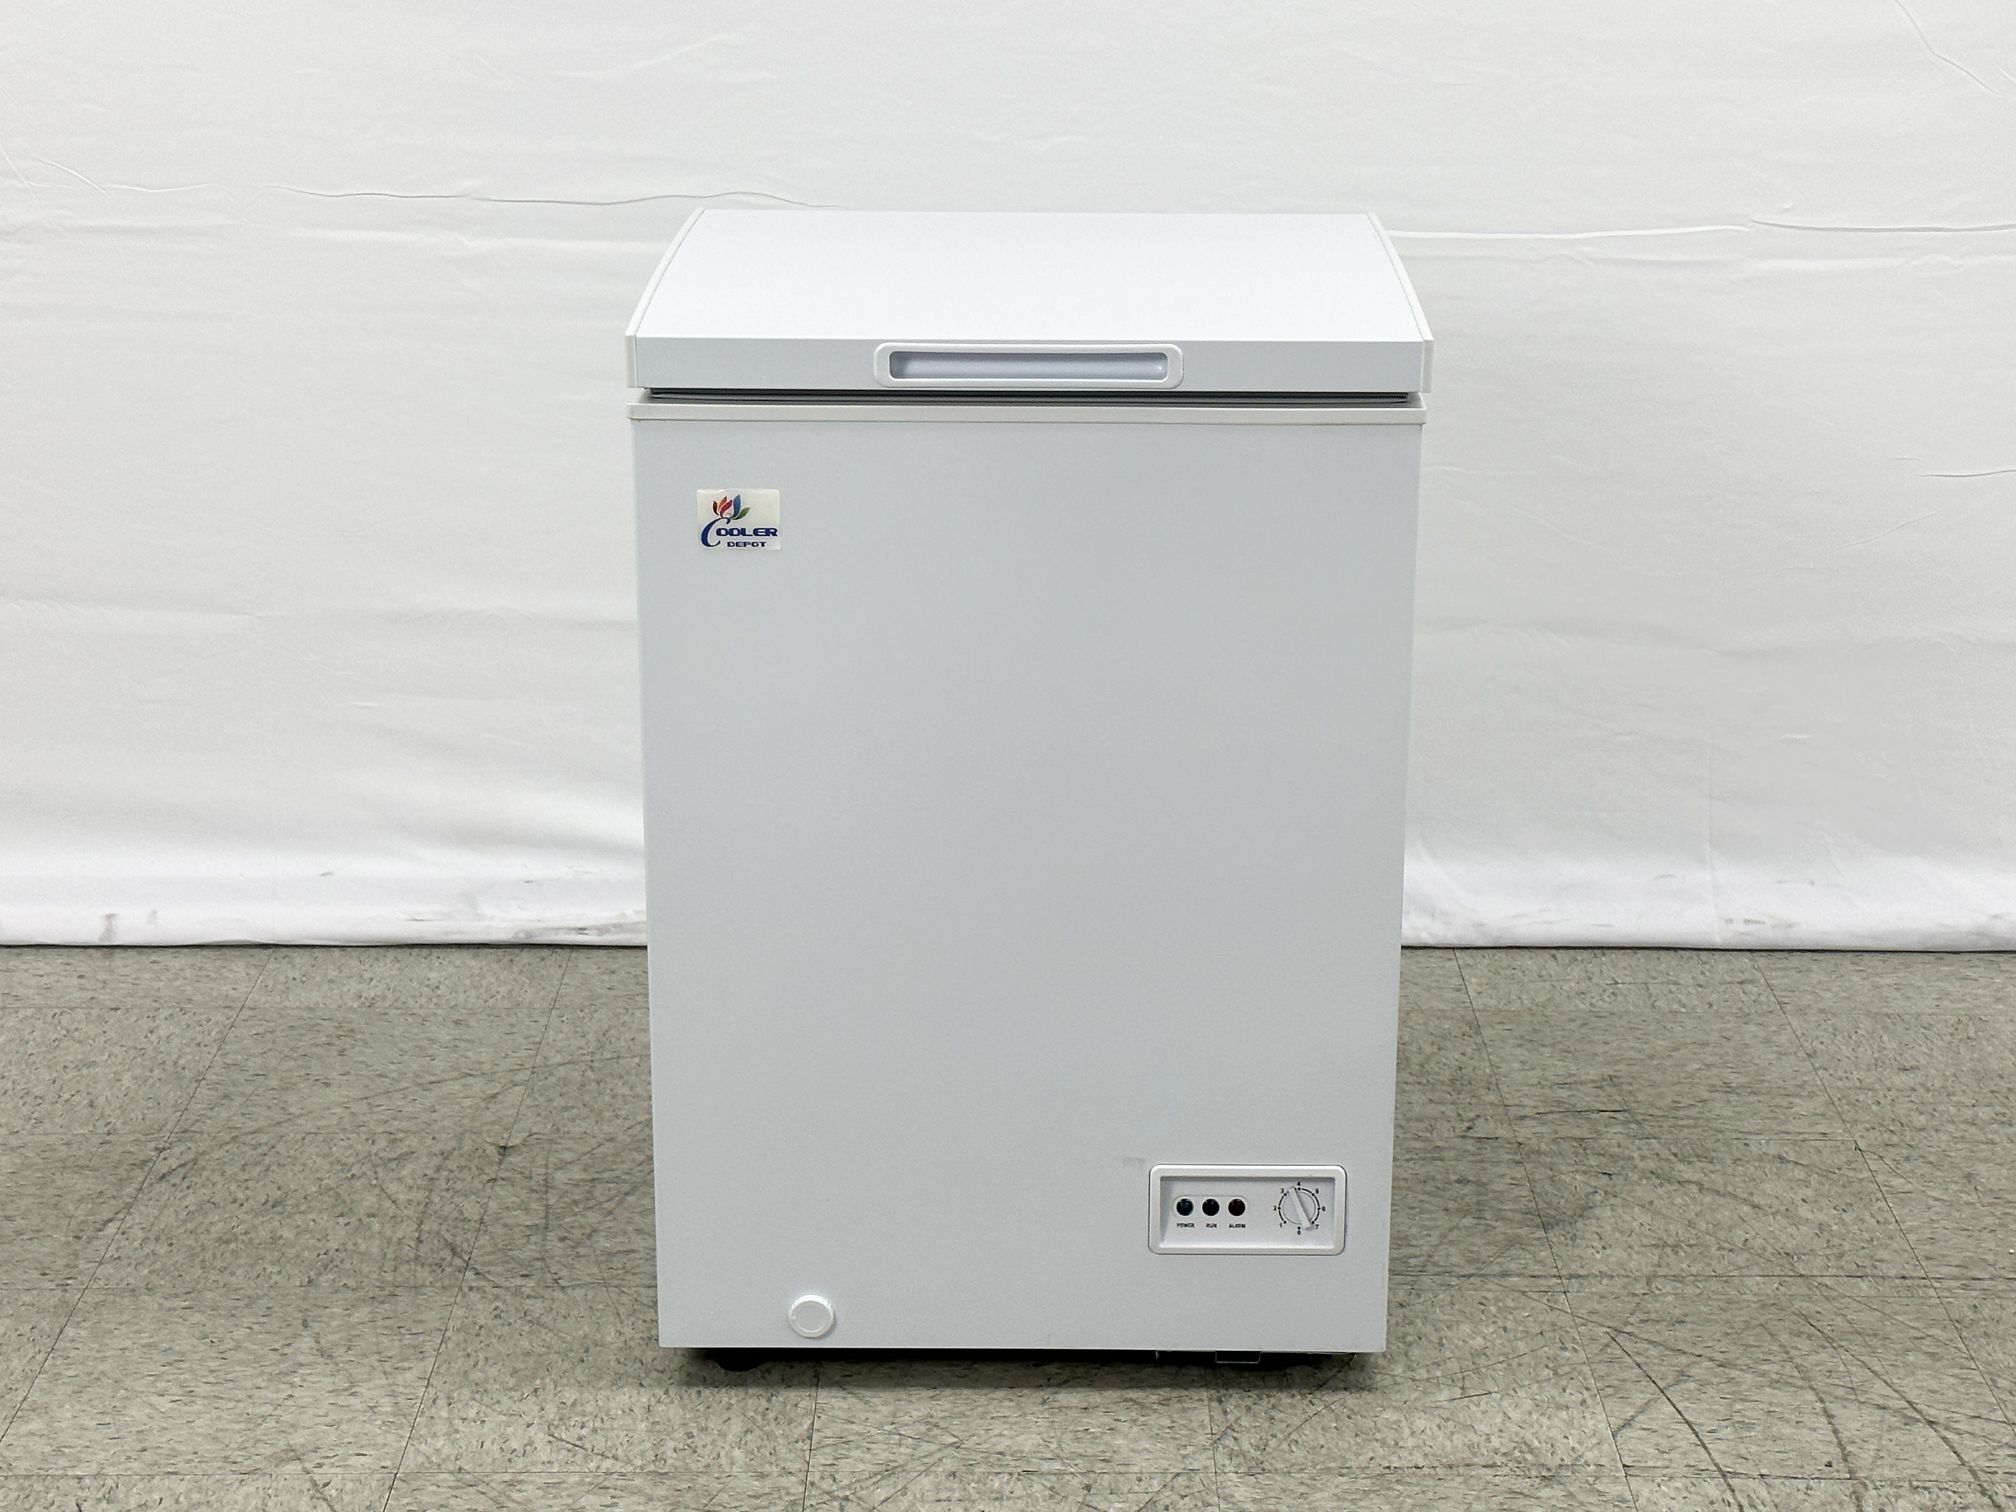 CSA Single Door food Chest Freezer 3.5 Cu Ft XF-95